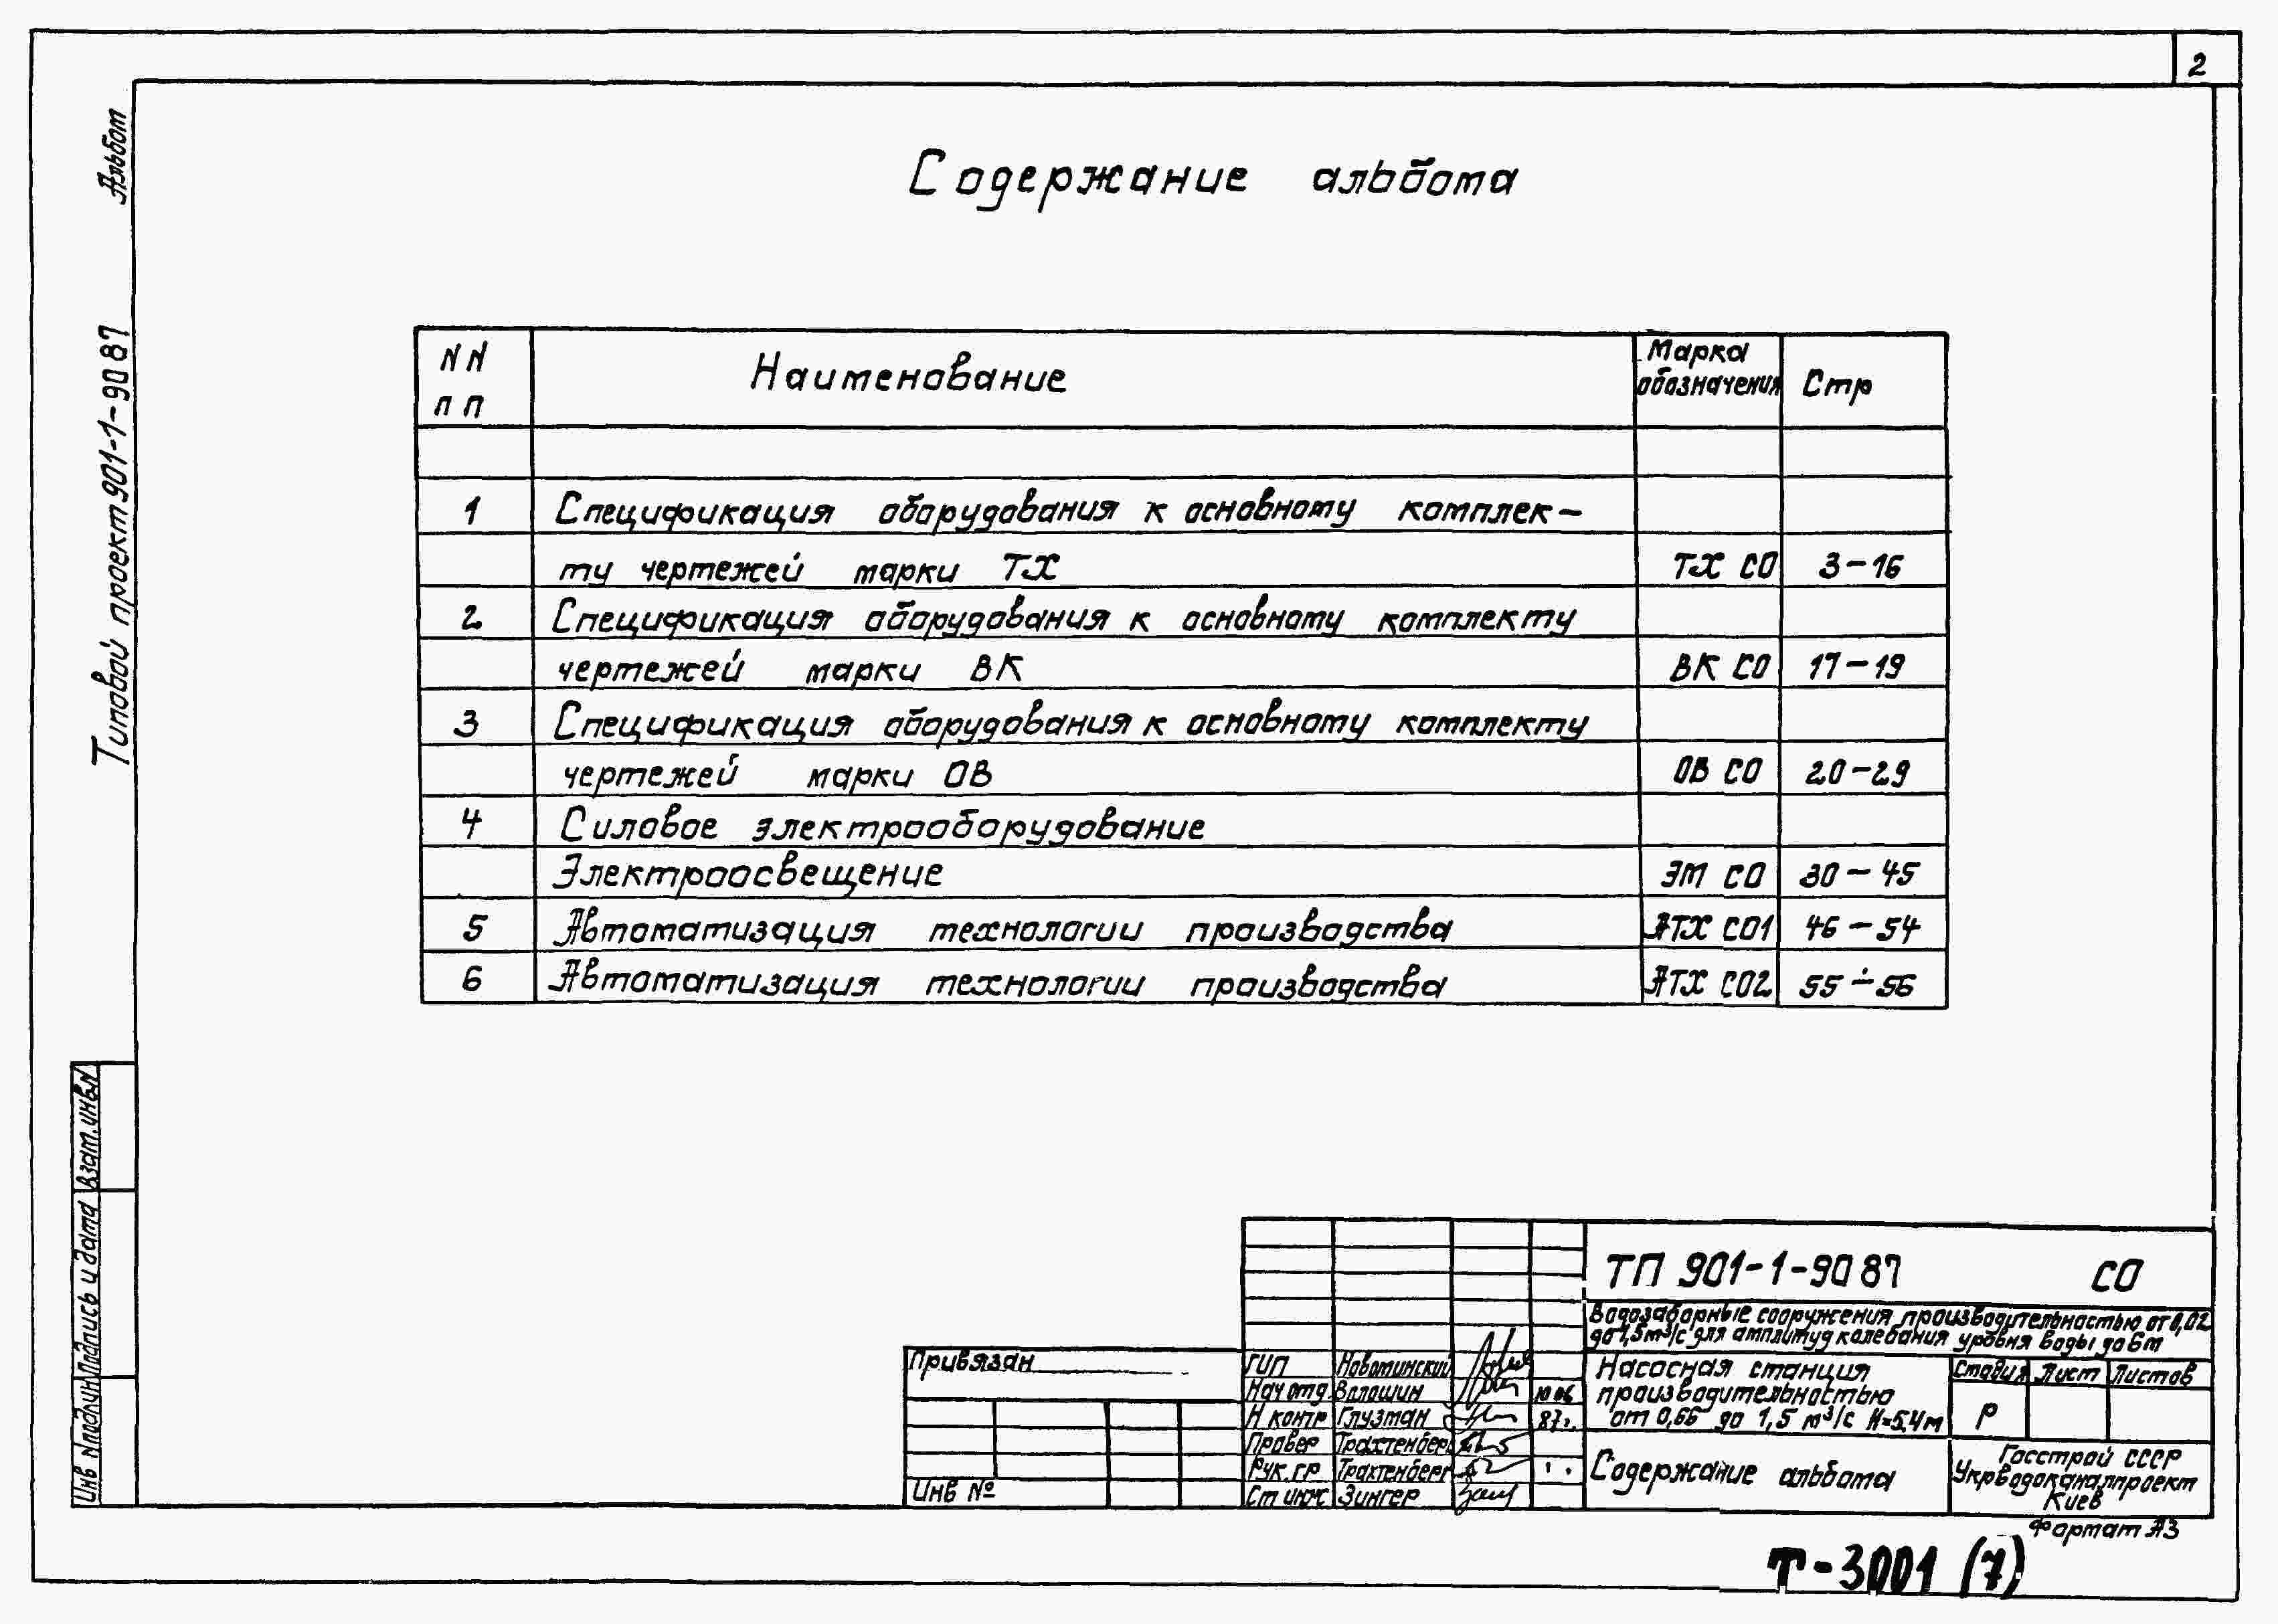 Альбом 7 Спецификация оборудования (из ТП 901-1-90.87)